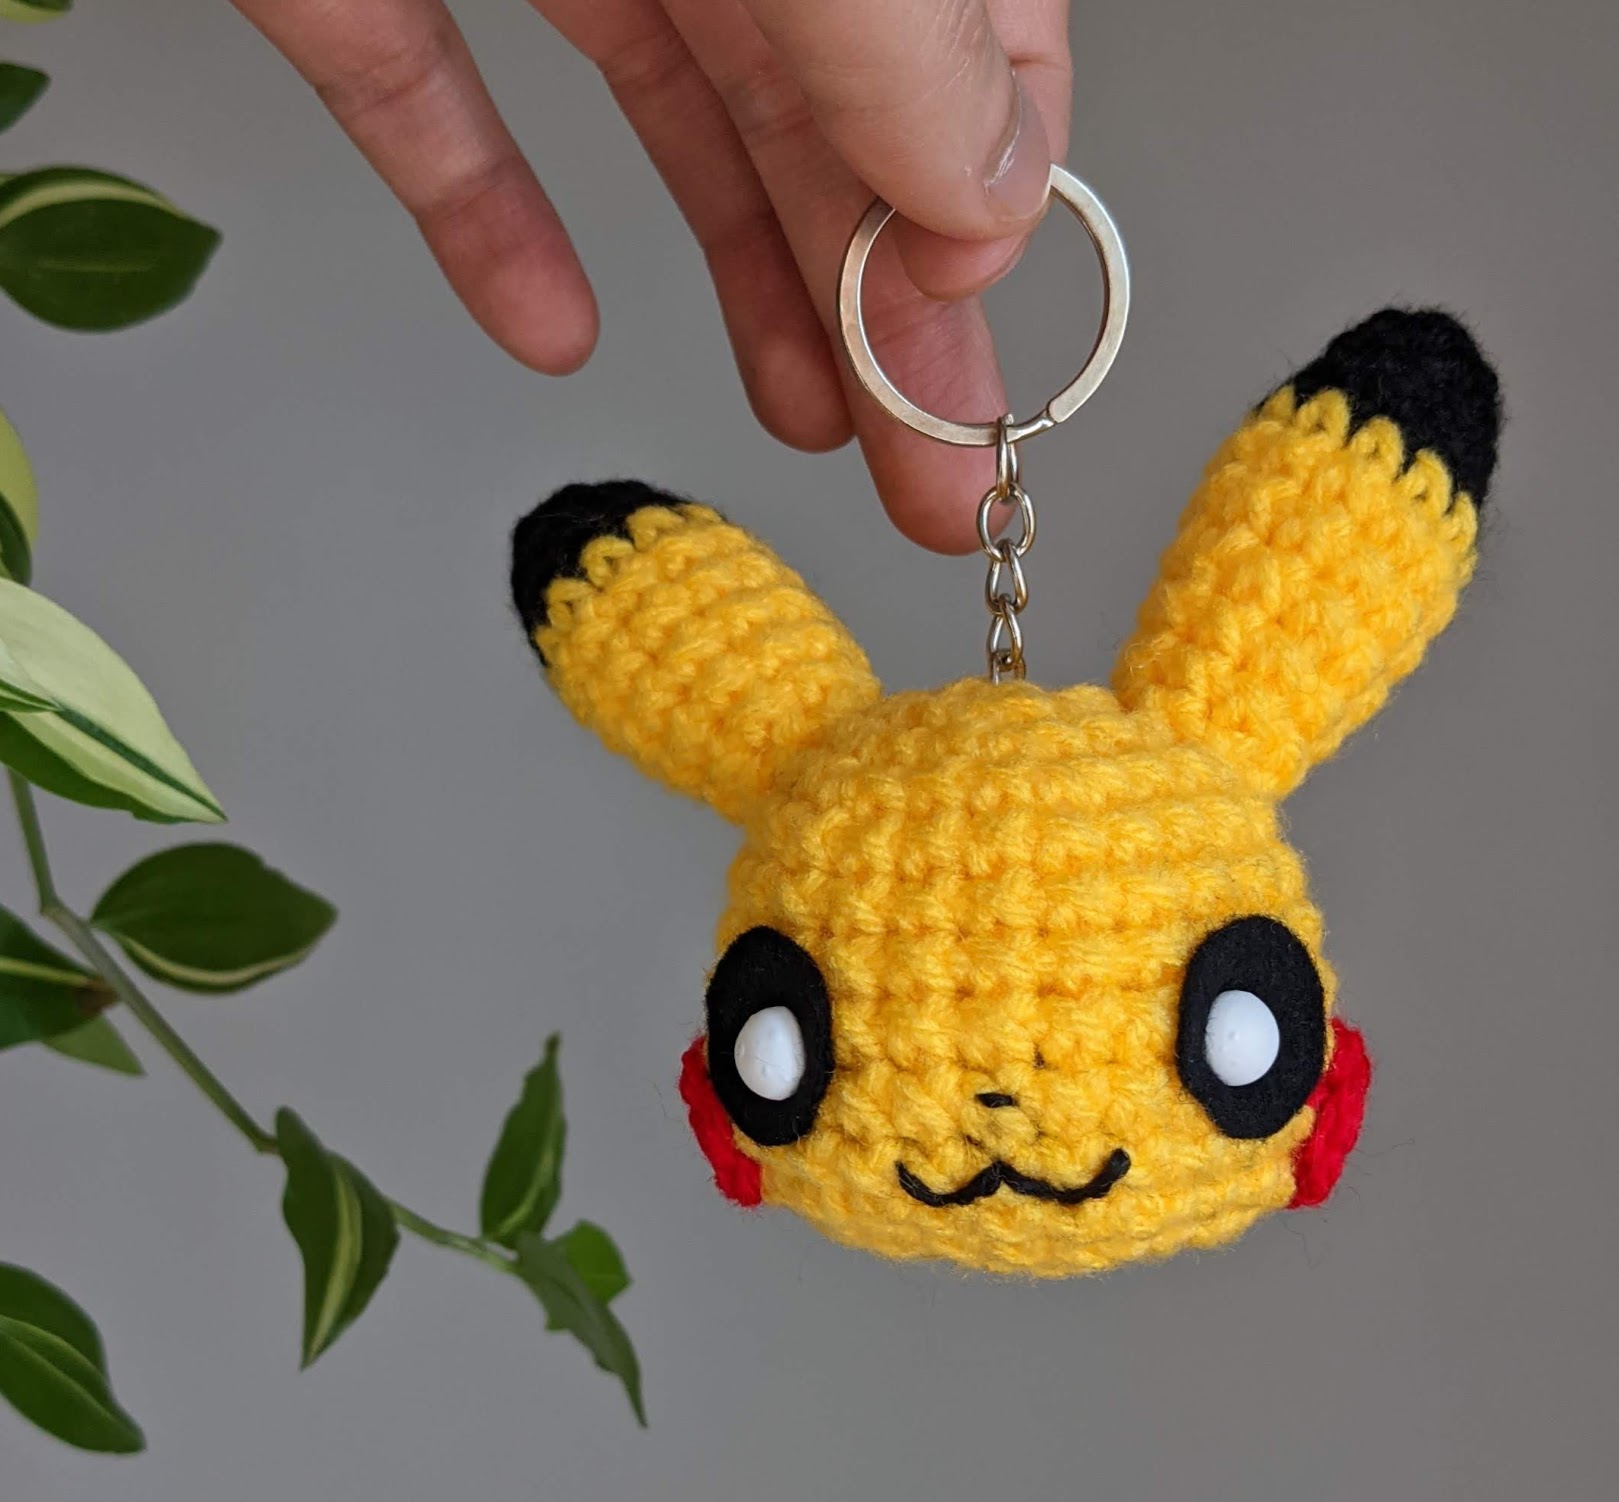 Pikachu Keychain Amigurumi Crochet Pattern - Sir Purl Grey